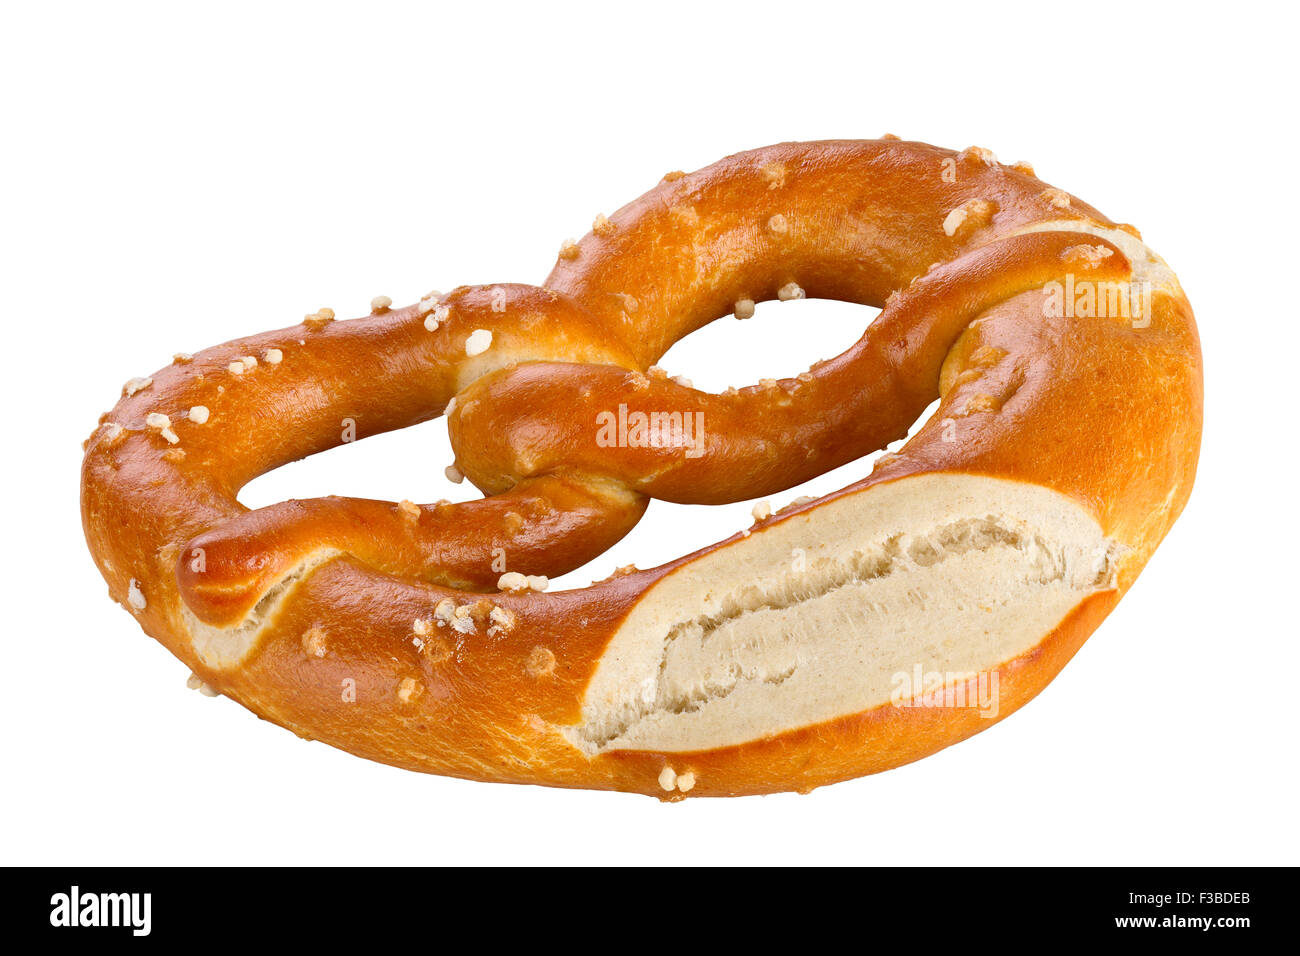 Eine Brezel ist eine Art gebackenes Brot Produkt aus Teig, die am häufigsten zu einem Knoten geformt. isoliert auf weißem Hintergrund. Stockfoto